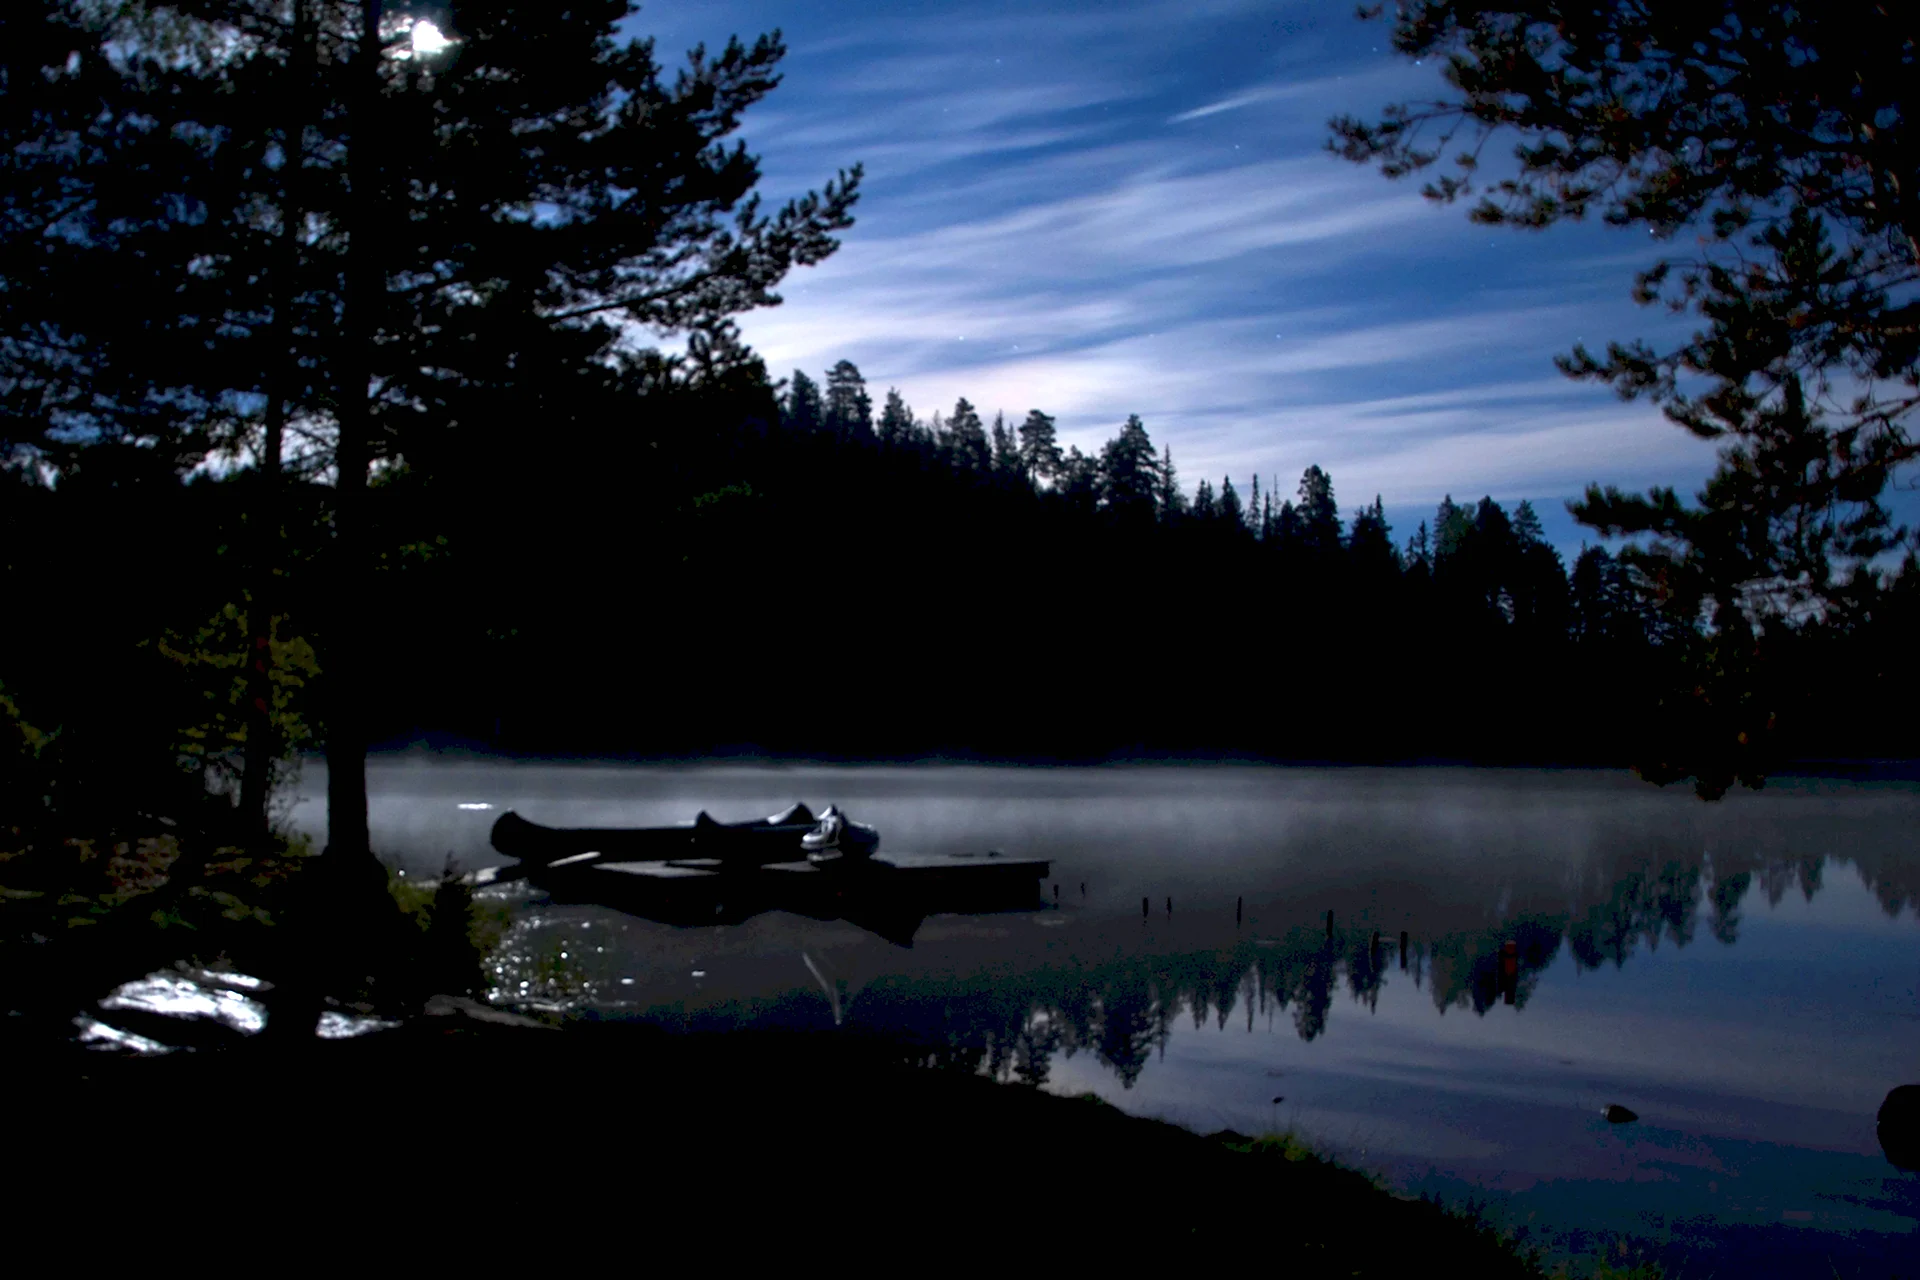 Ночное озеро в лесу